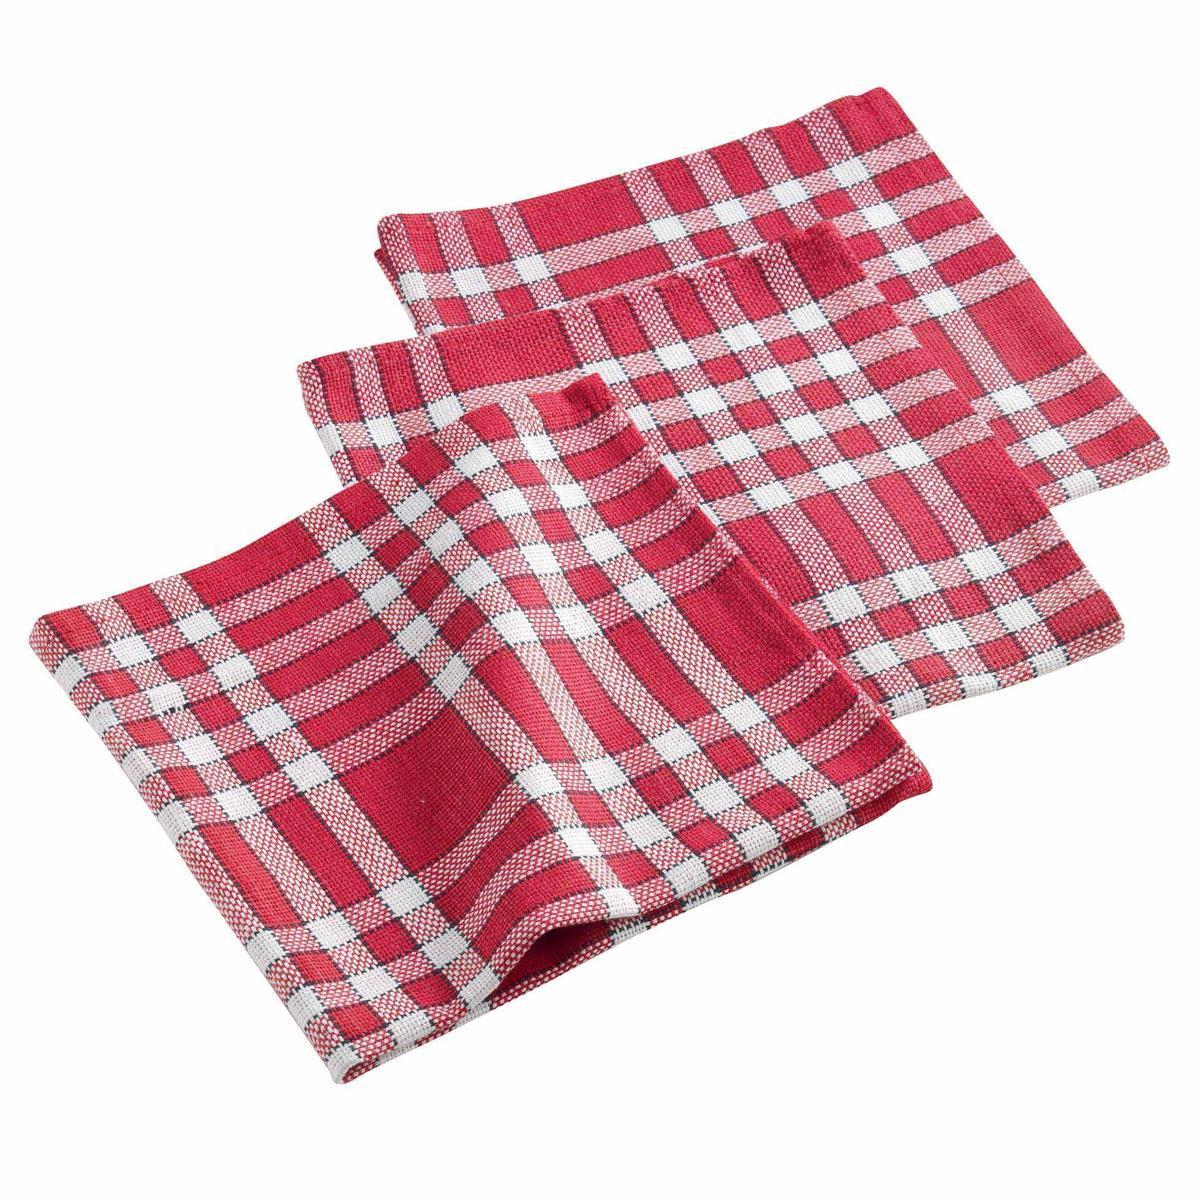 3 serviettes de table tissées tradition - L 40 x l 40 cm - Rouge